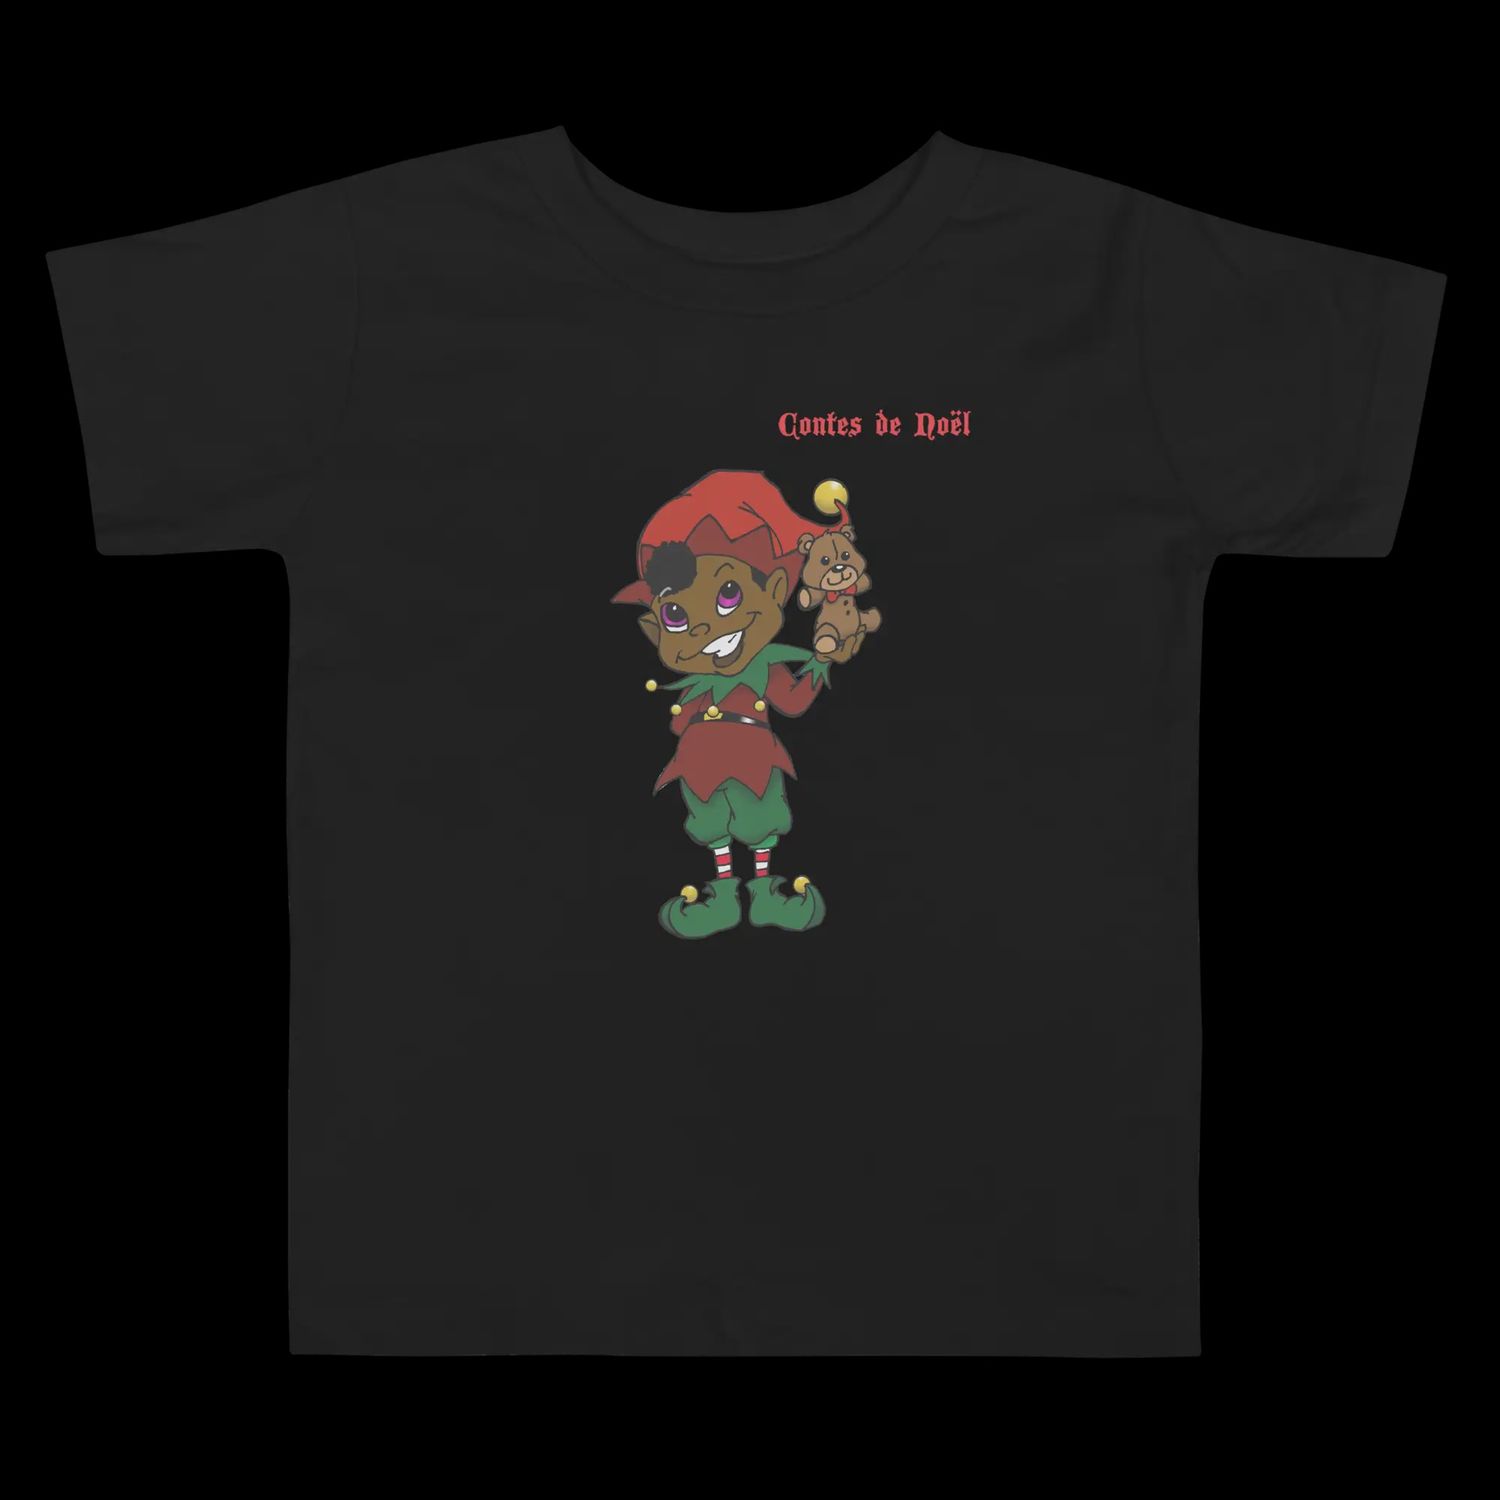 T-Shirt Contes de Noël - Bonnet Rouge - Enfant, Couleur: Noir, Grandeur: 2T